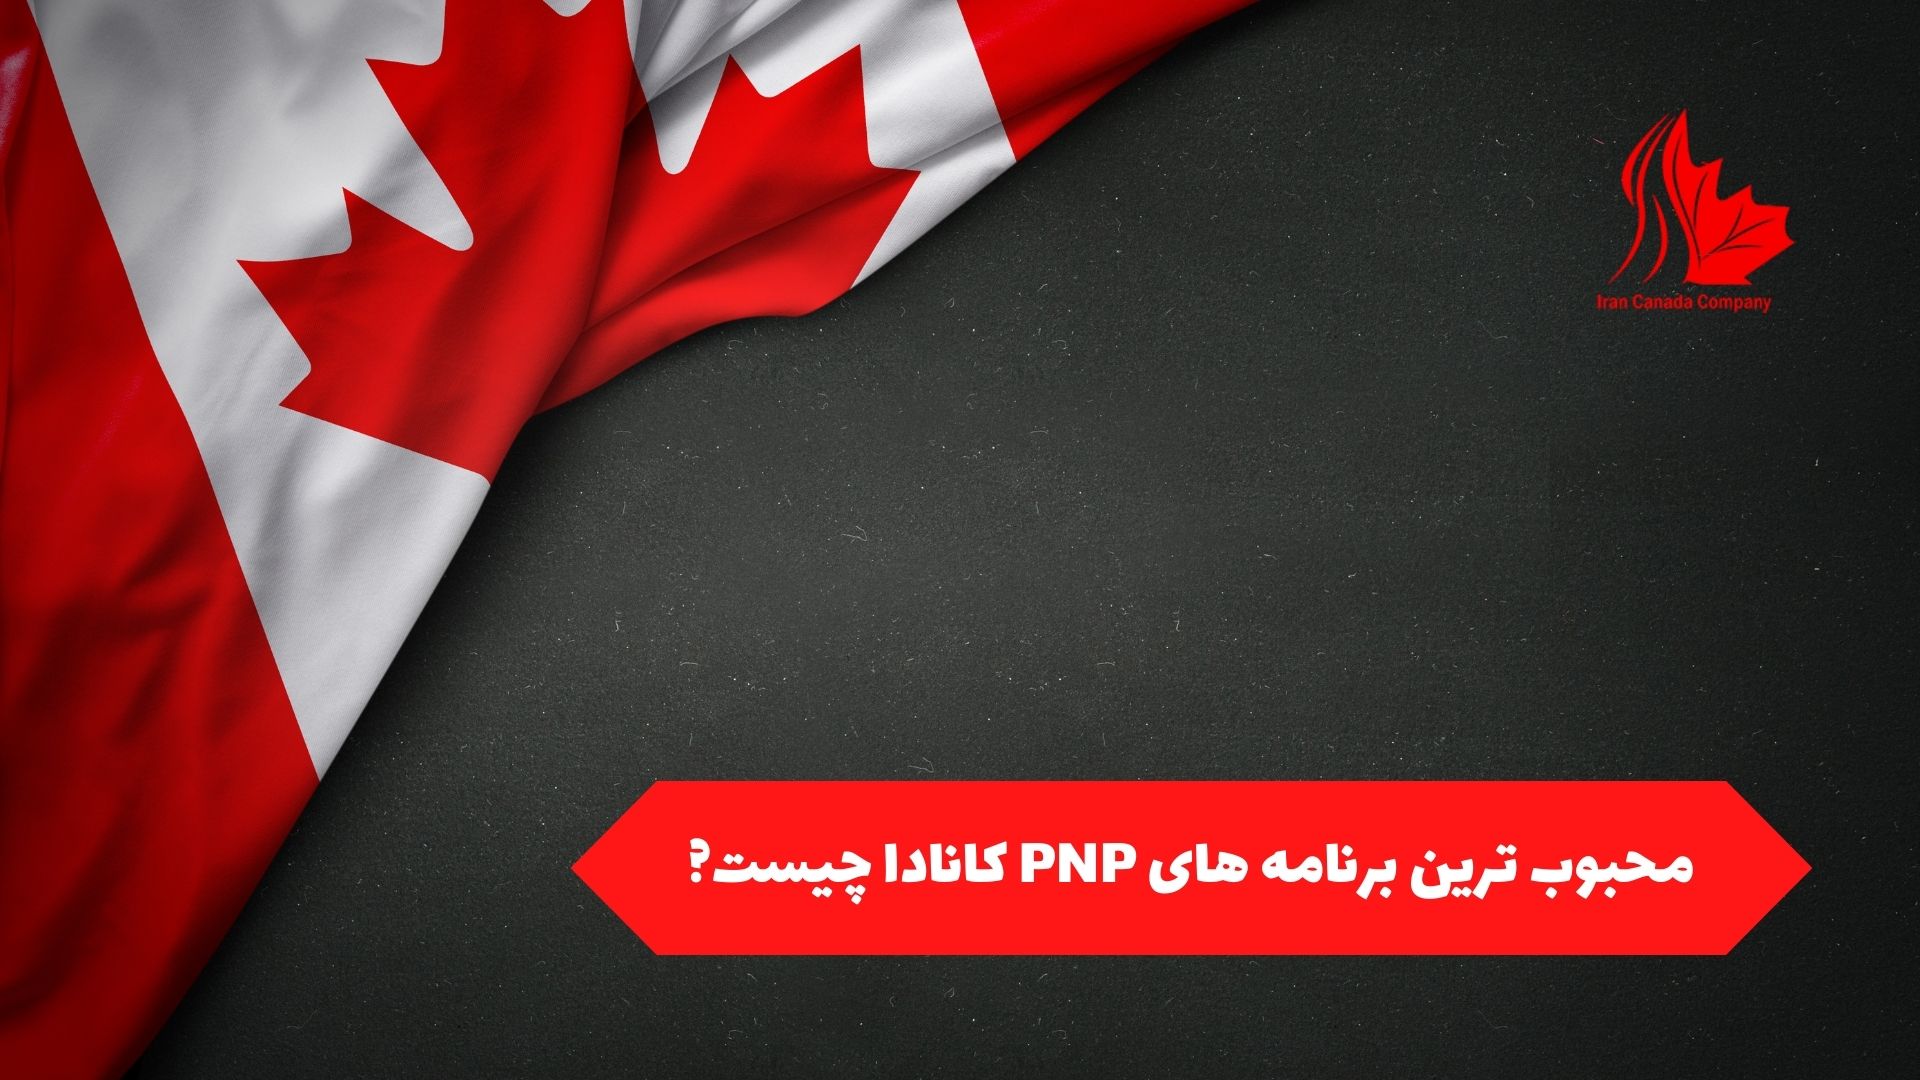 محبوب ترین برنامه های PNP کانادا چیست؟